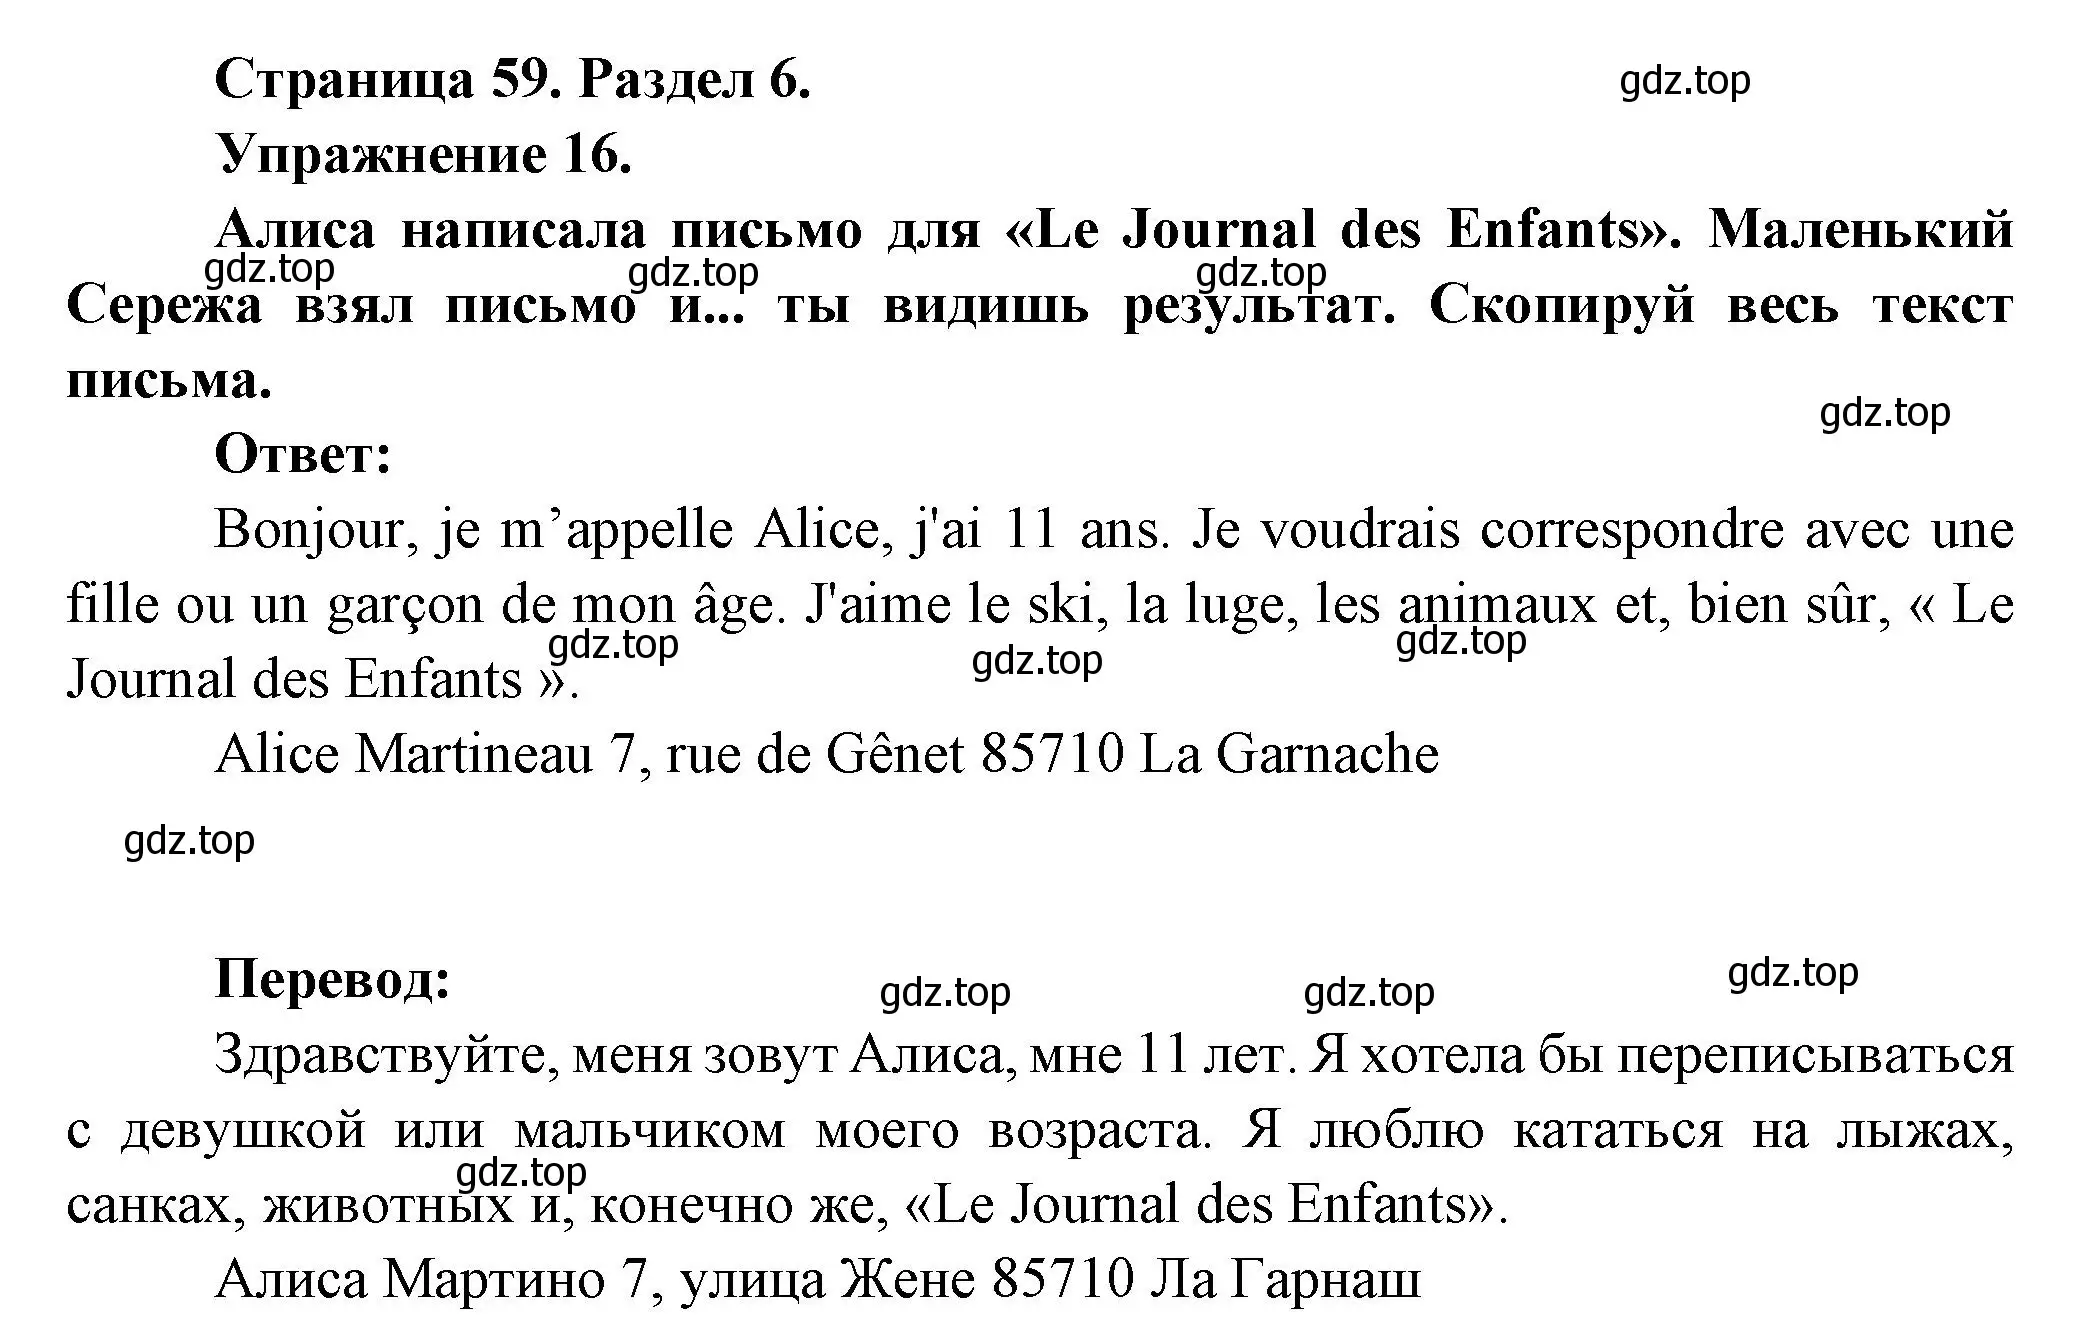 Решение номер 16 (страница 59) гдз по французскому языку 5 класс Береговская, Белосельская, учебник 2 часть